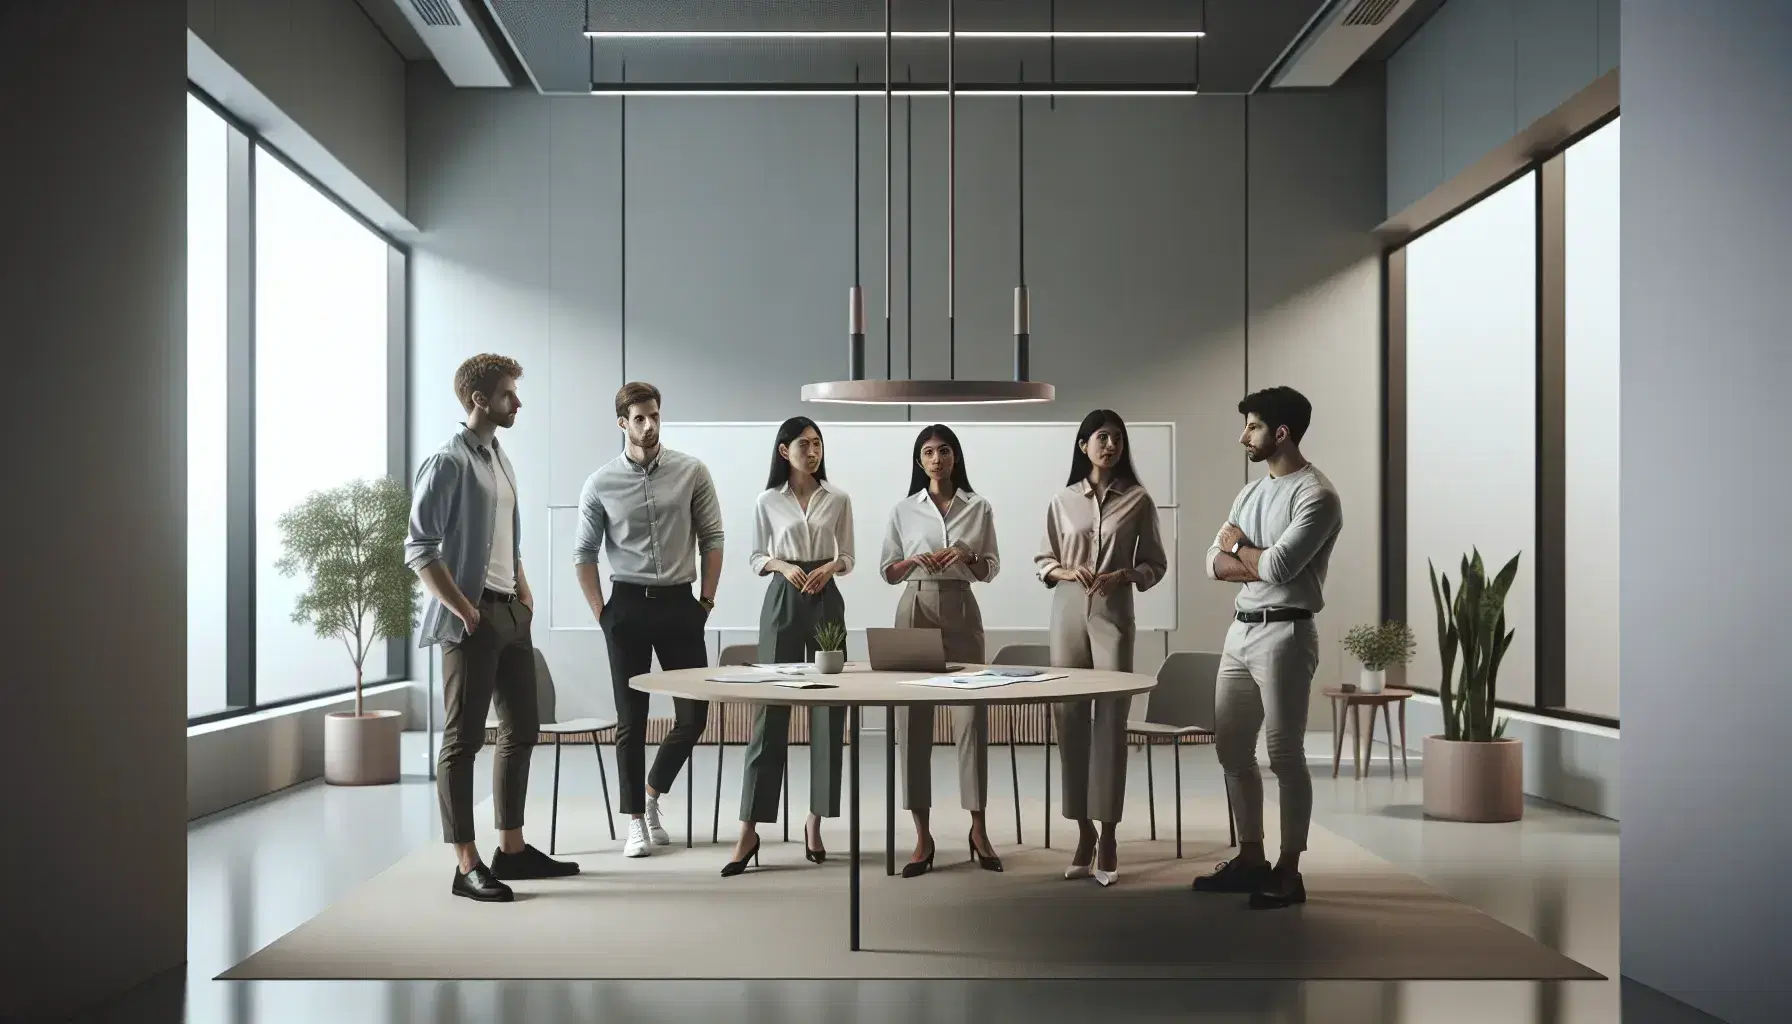 Grupo diverso de profesionales colaborando en una oficina moderna con mesa redonda, pizarra blanca y planta decorativa.